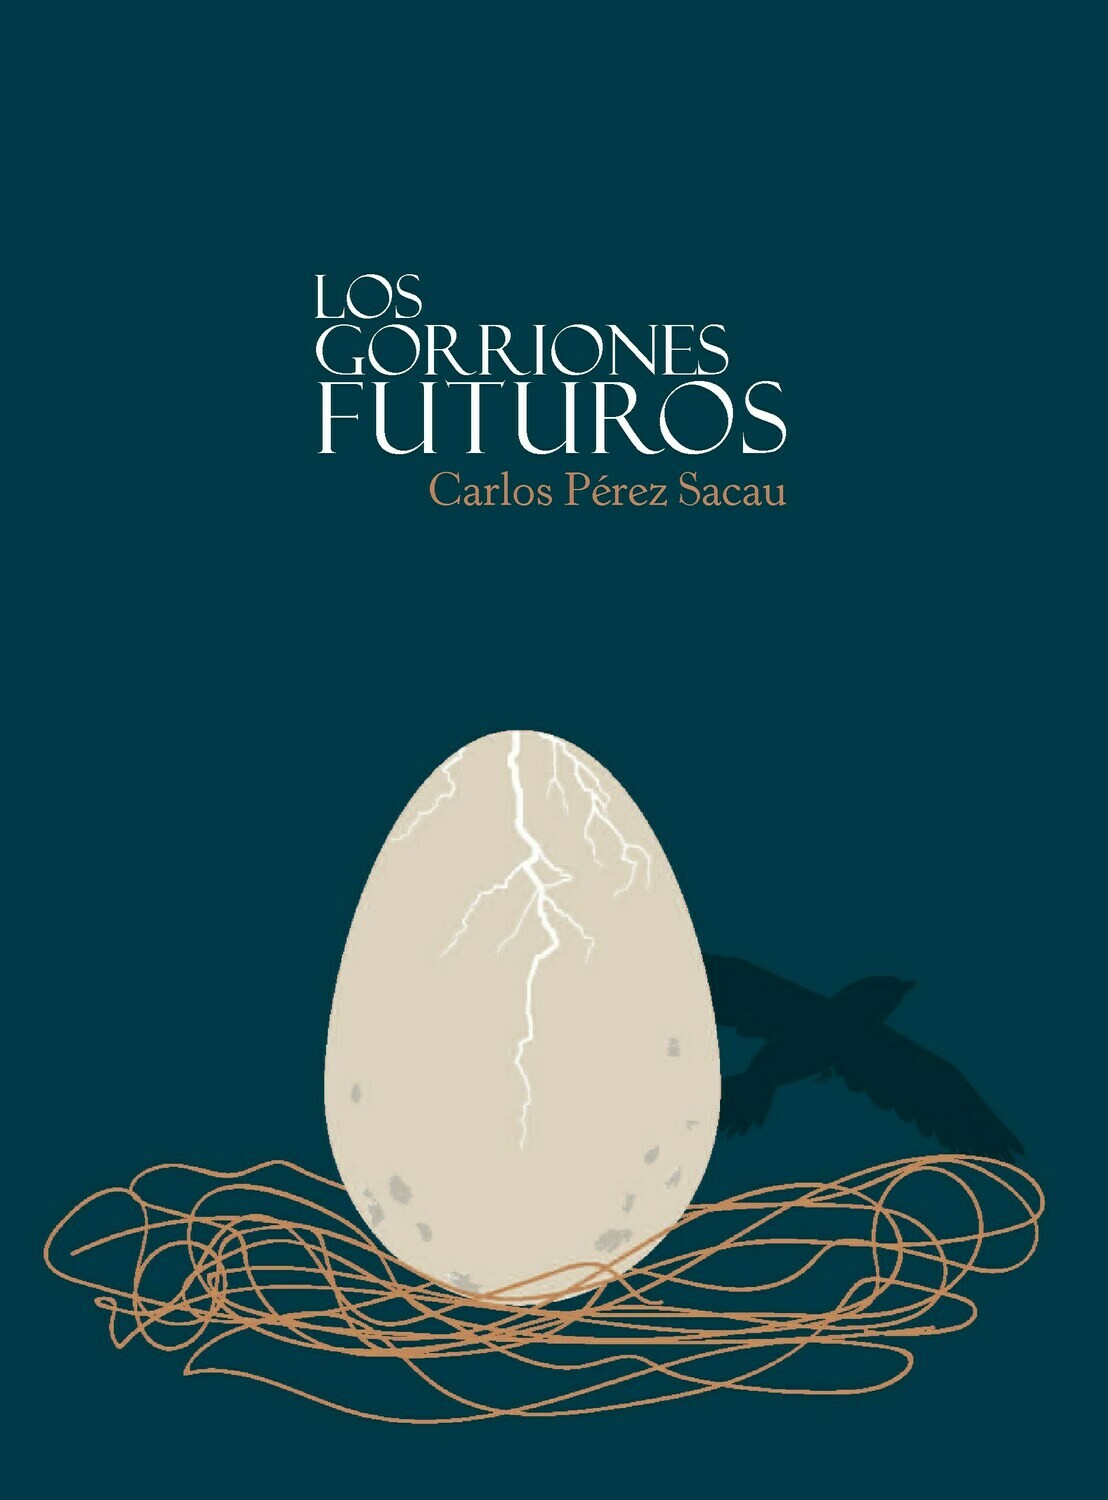 Los Gorriones futuros, de Carlos Pérez Sacau